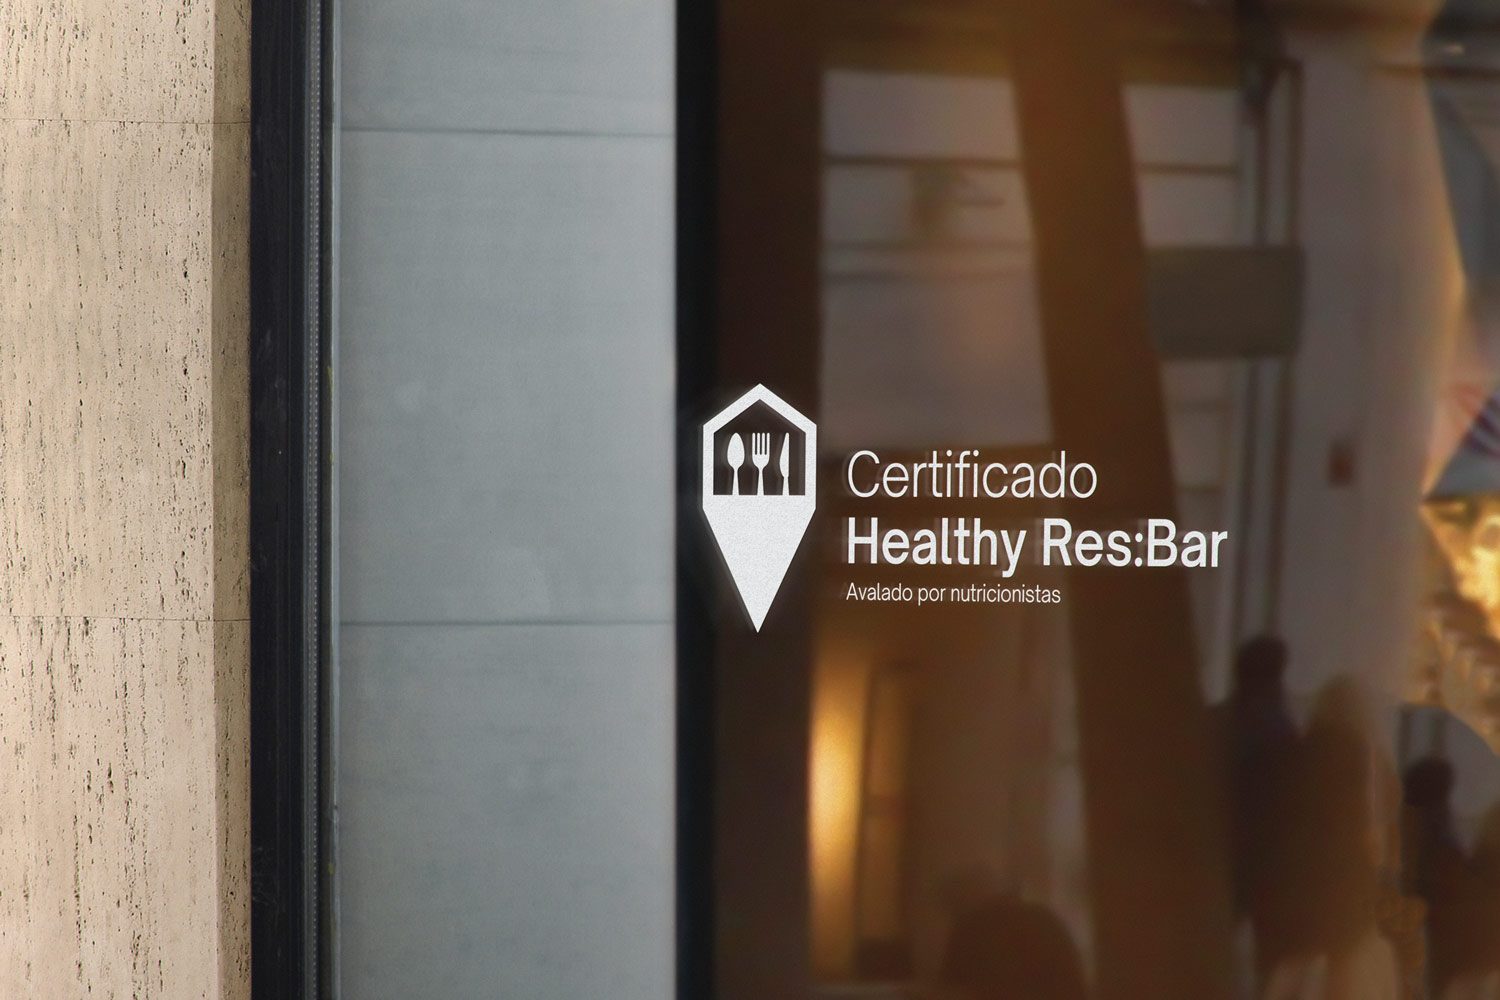 Escaparate de restaurante con el logo de Healthy res:bar